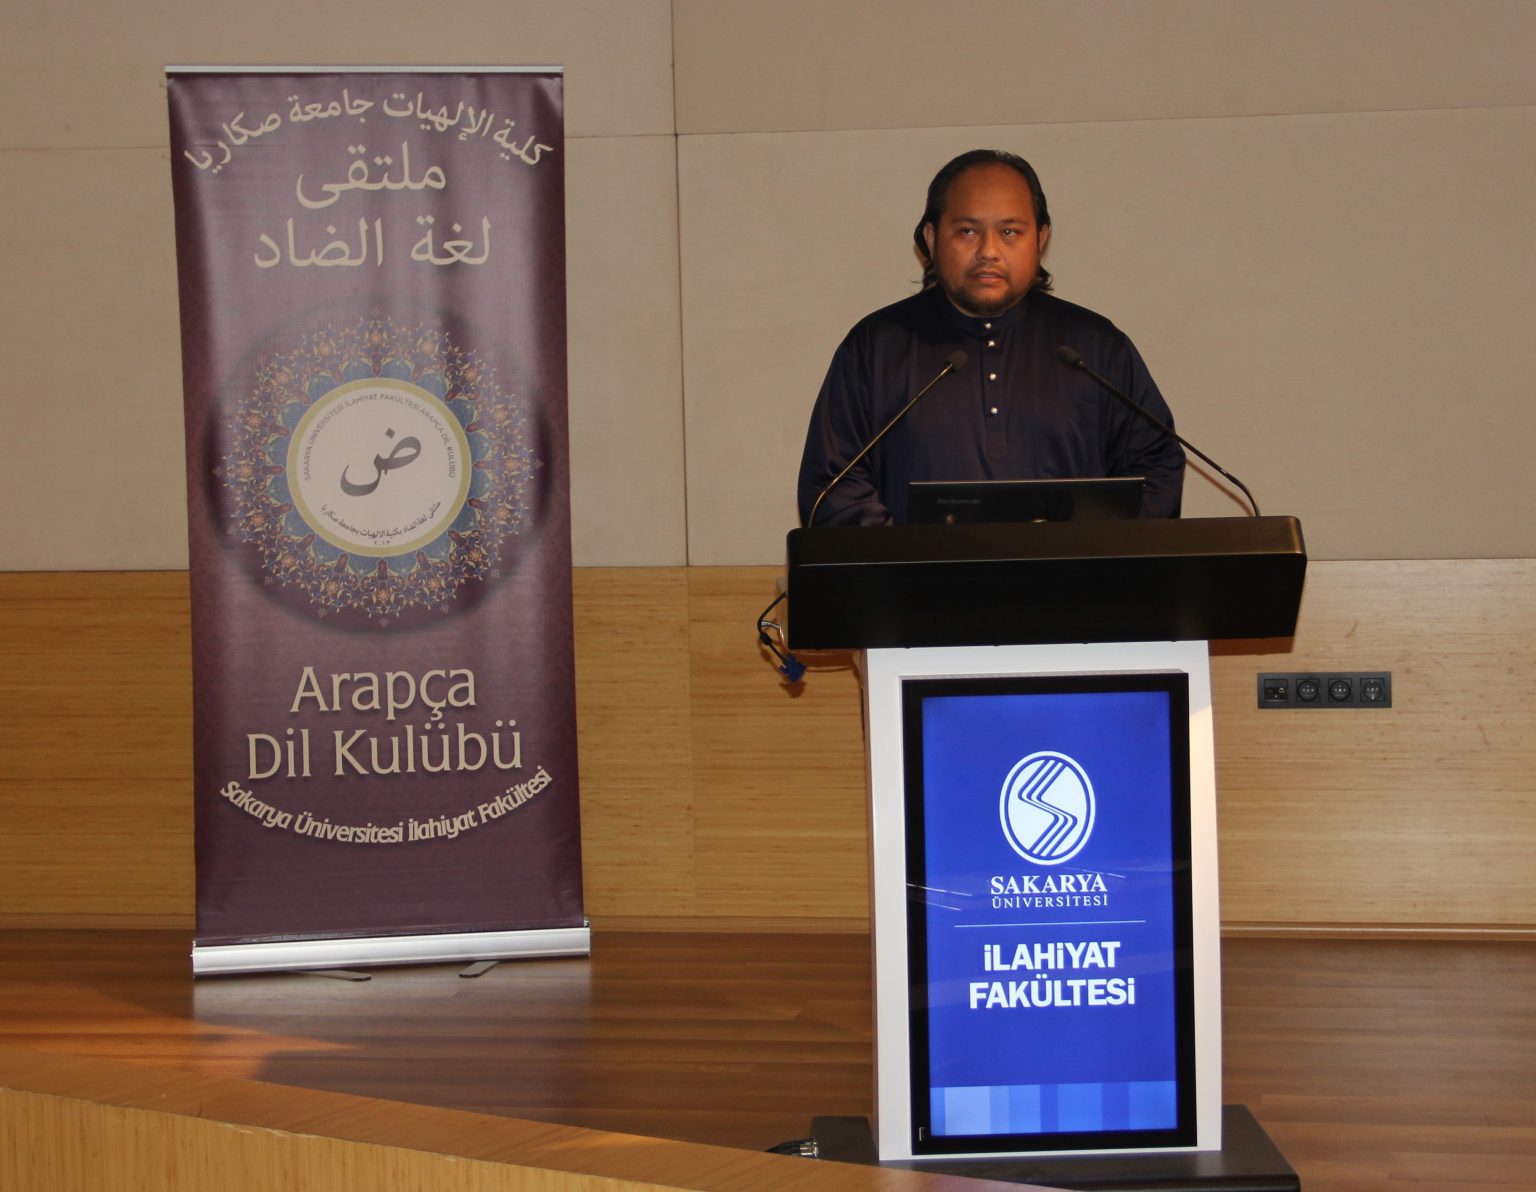 “Malezya’da İslâmi Eğitim ve İslam’ın Tarihi” konulu konferans düzenlendi.